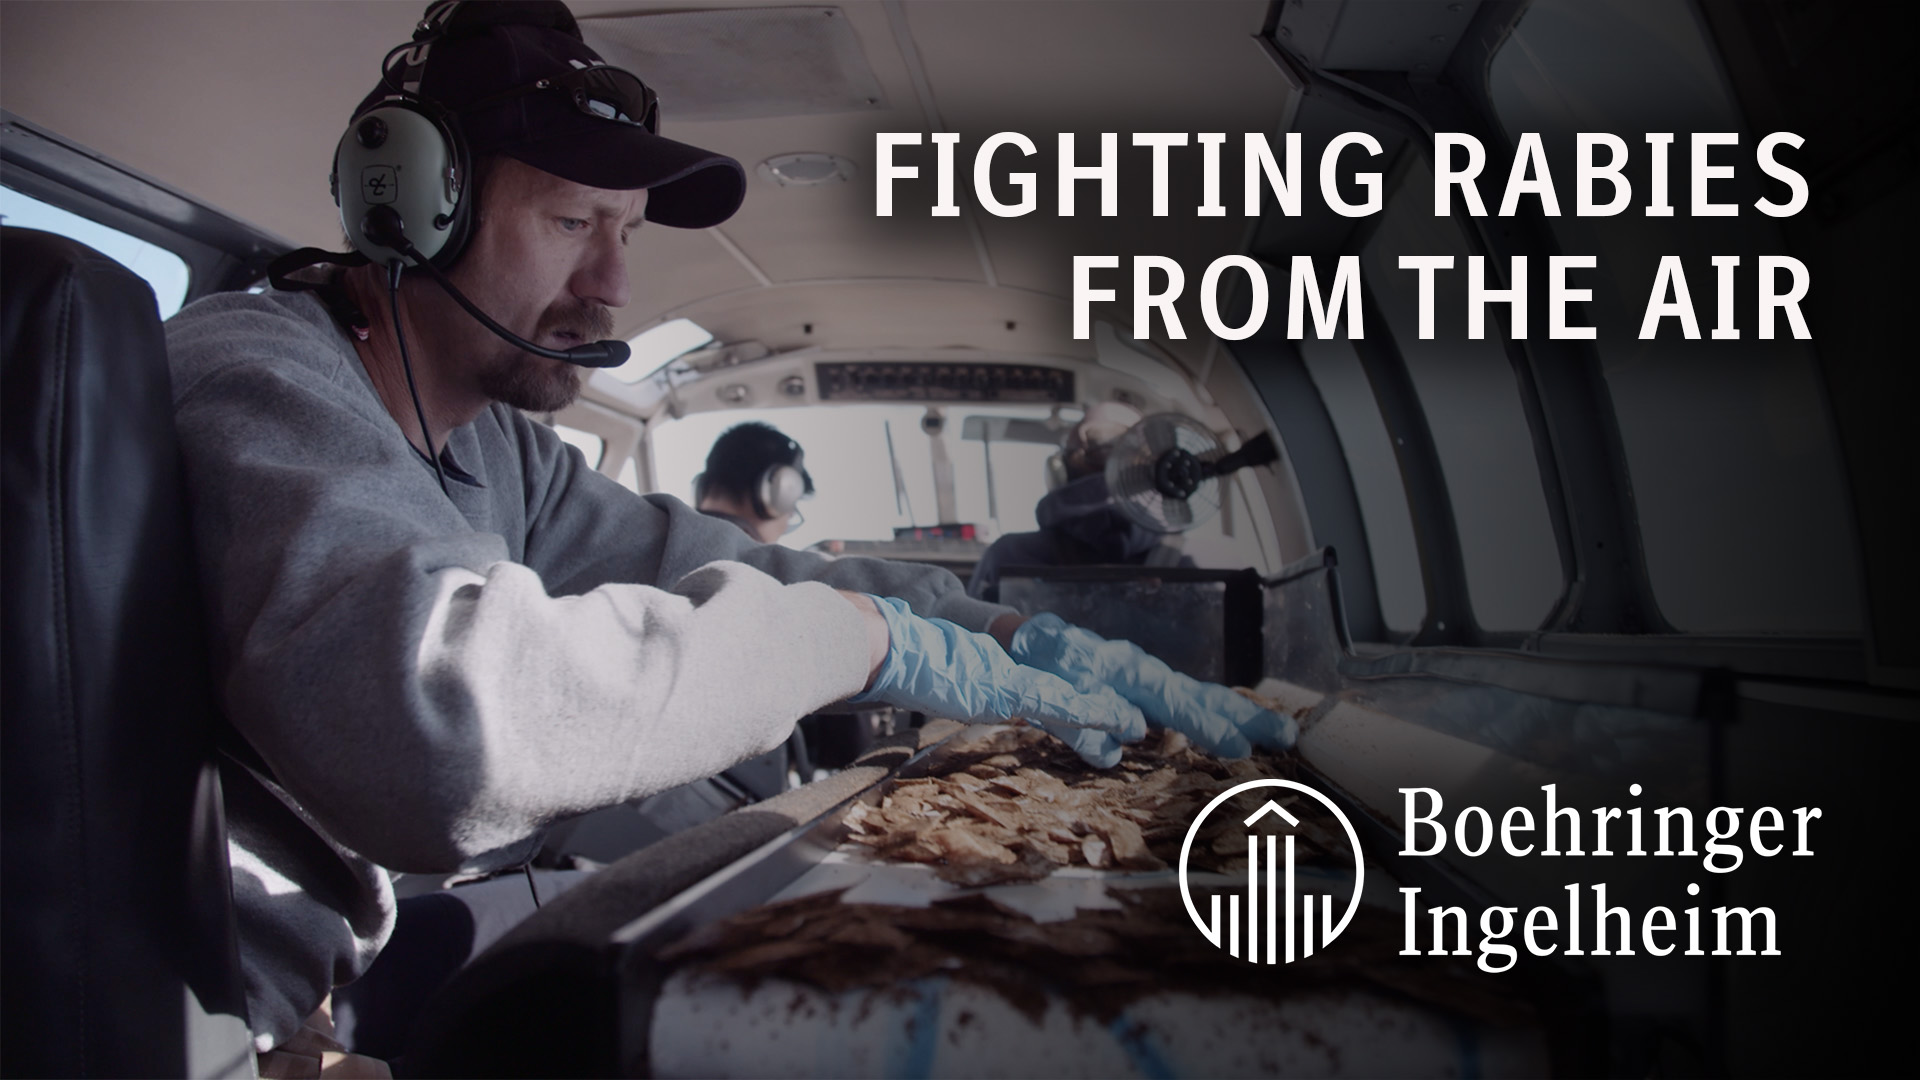 Boehringer Ingelheim – Fighting Rabies From the Air